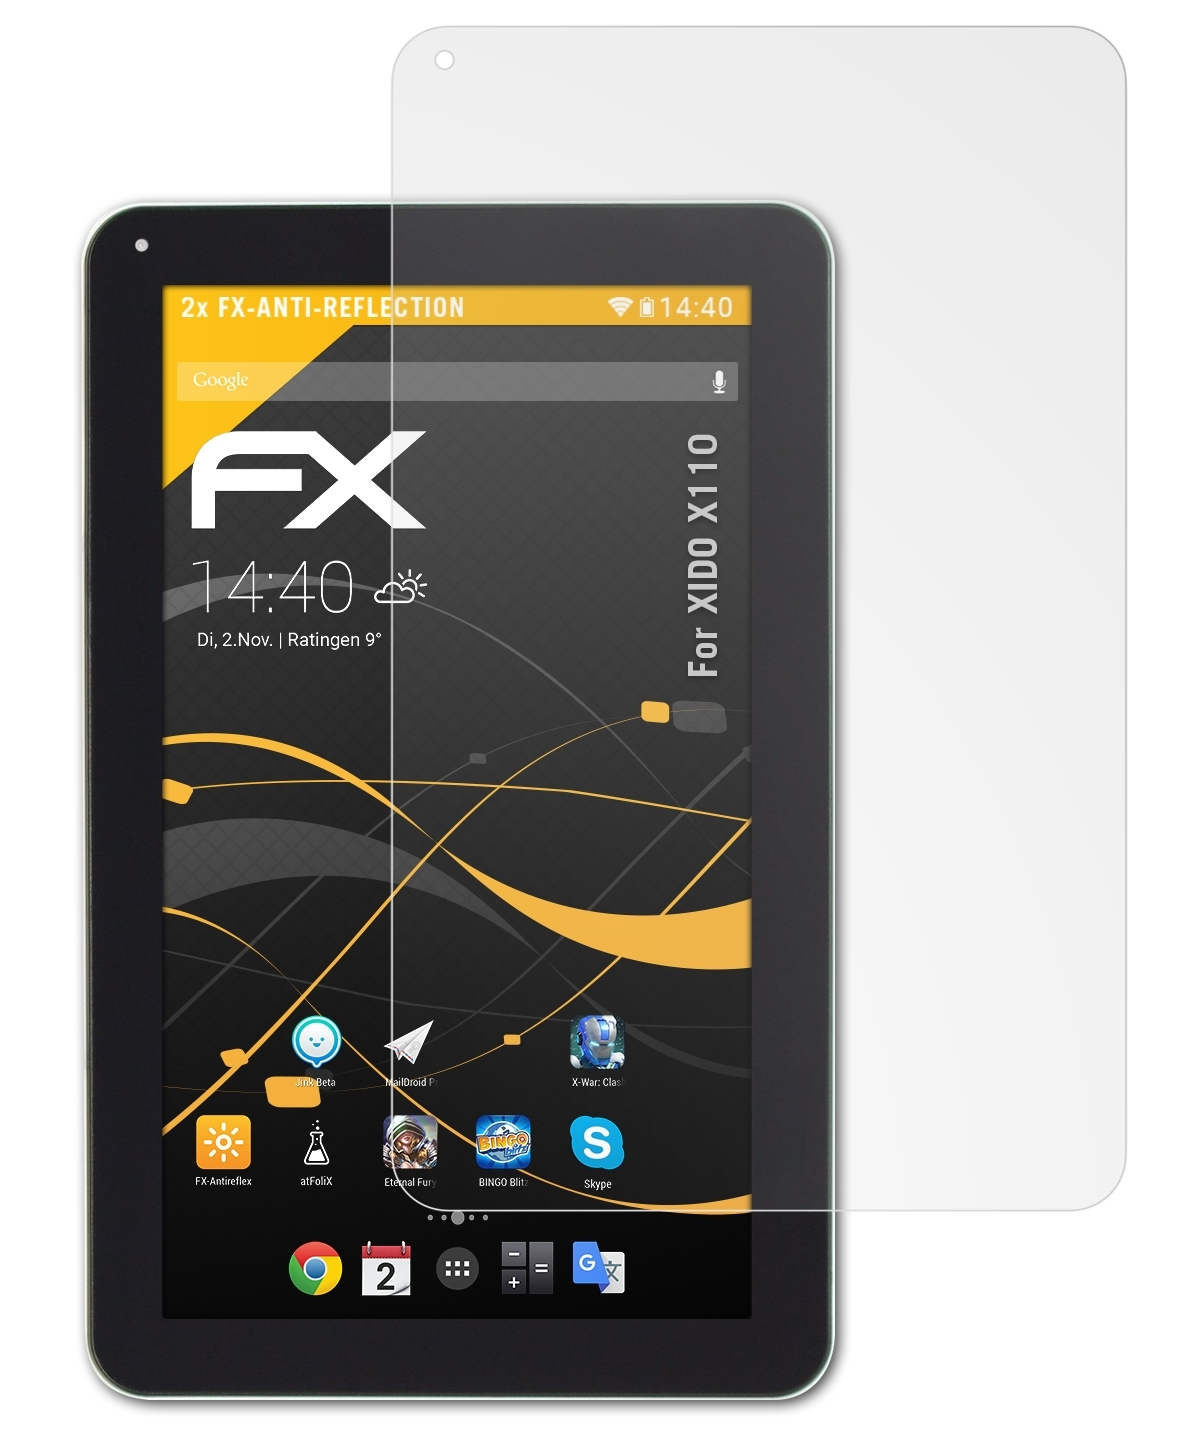 X110) ATFOLIX XIDO Displayschutz(für FX-Antireflex 2x